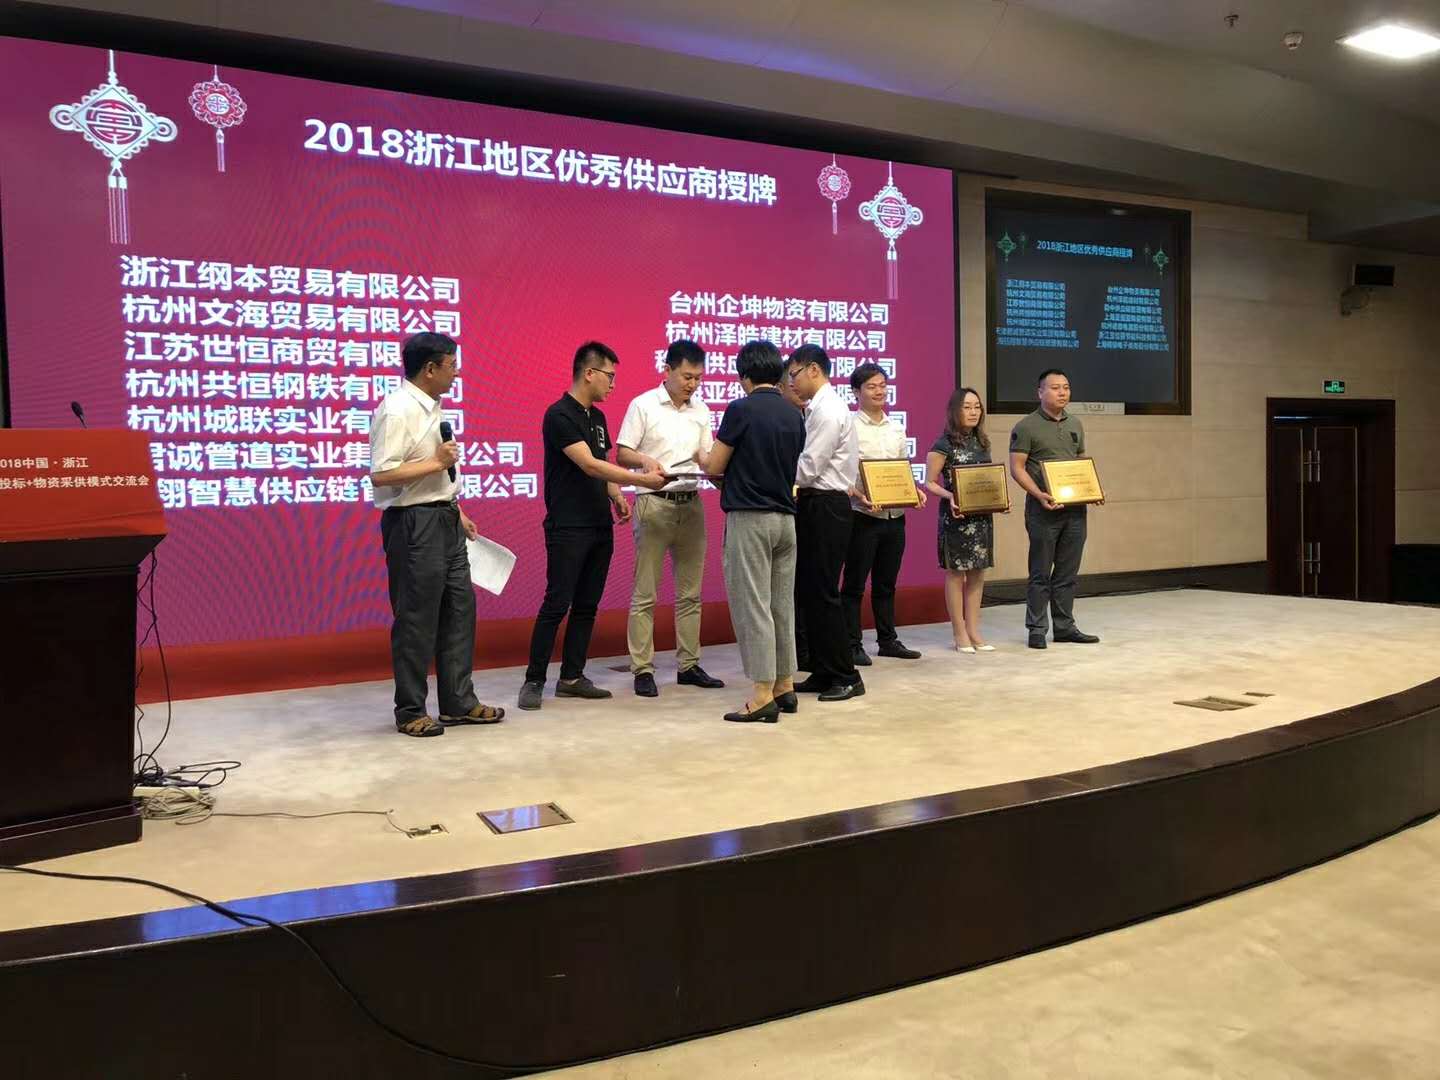 祝贺杭州泽皓建材有限公司被评为浙江地区优秀供应商